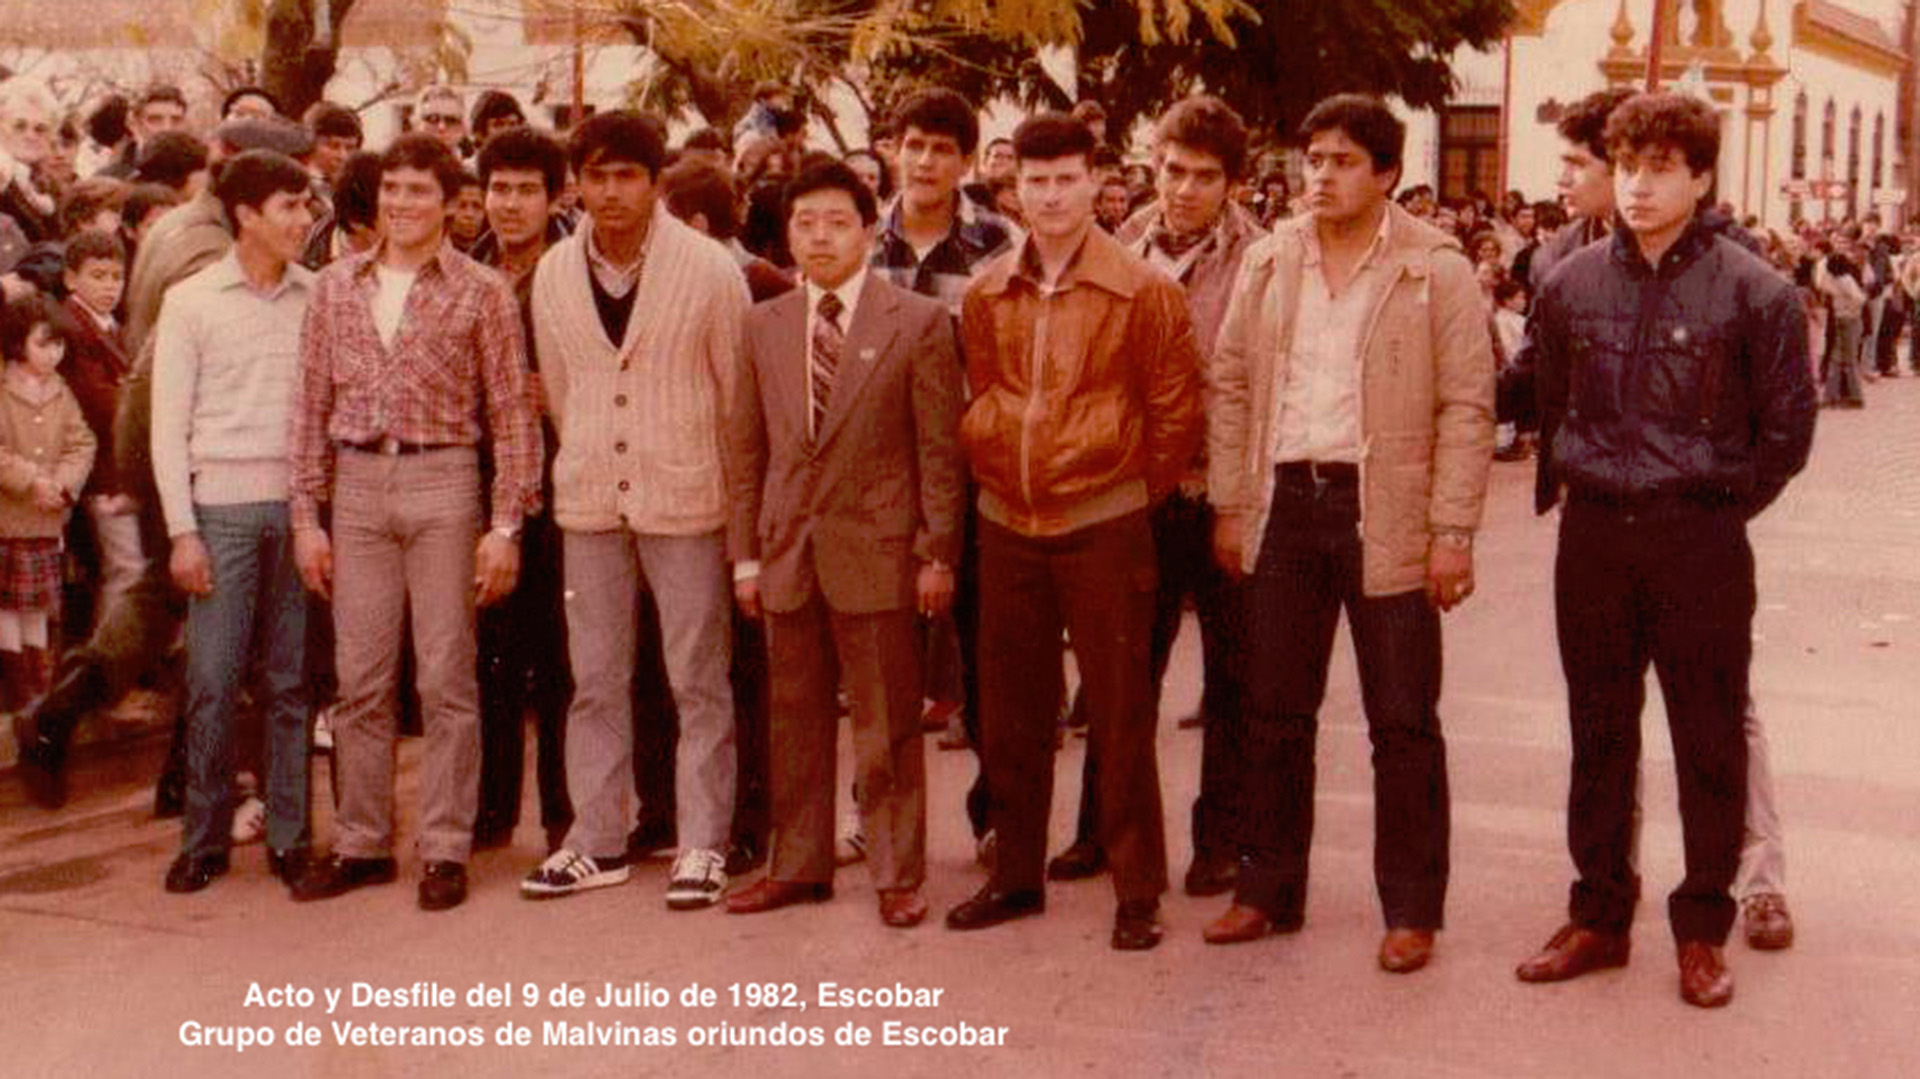 Desfile del 9 de julio de 1982 en Escobar, con sus compañeros veteranos de Malvinas. Matsumoto, el único de traje y corbata